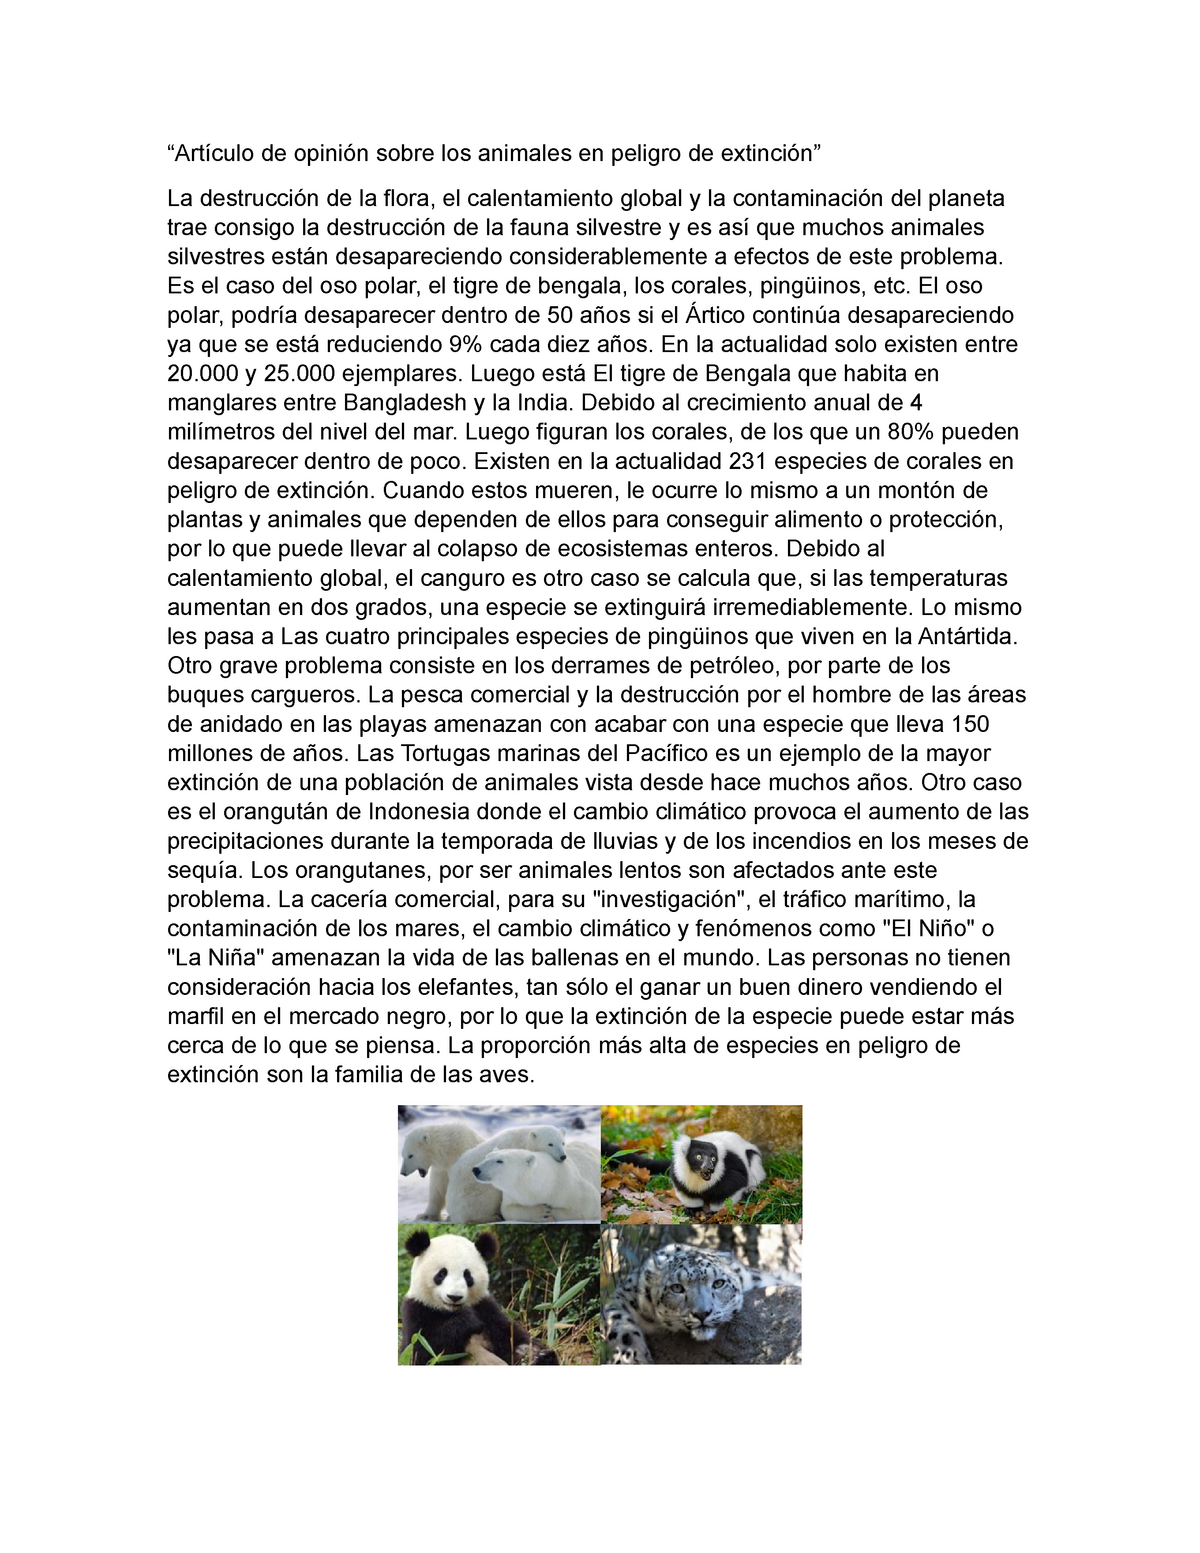 opinión sobre los animales en peligro de extinción “Artículo de opinión sobre los - StuDocu